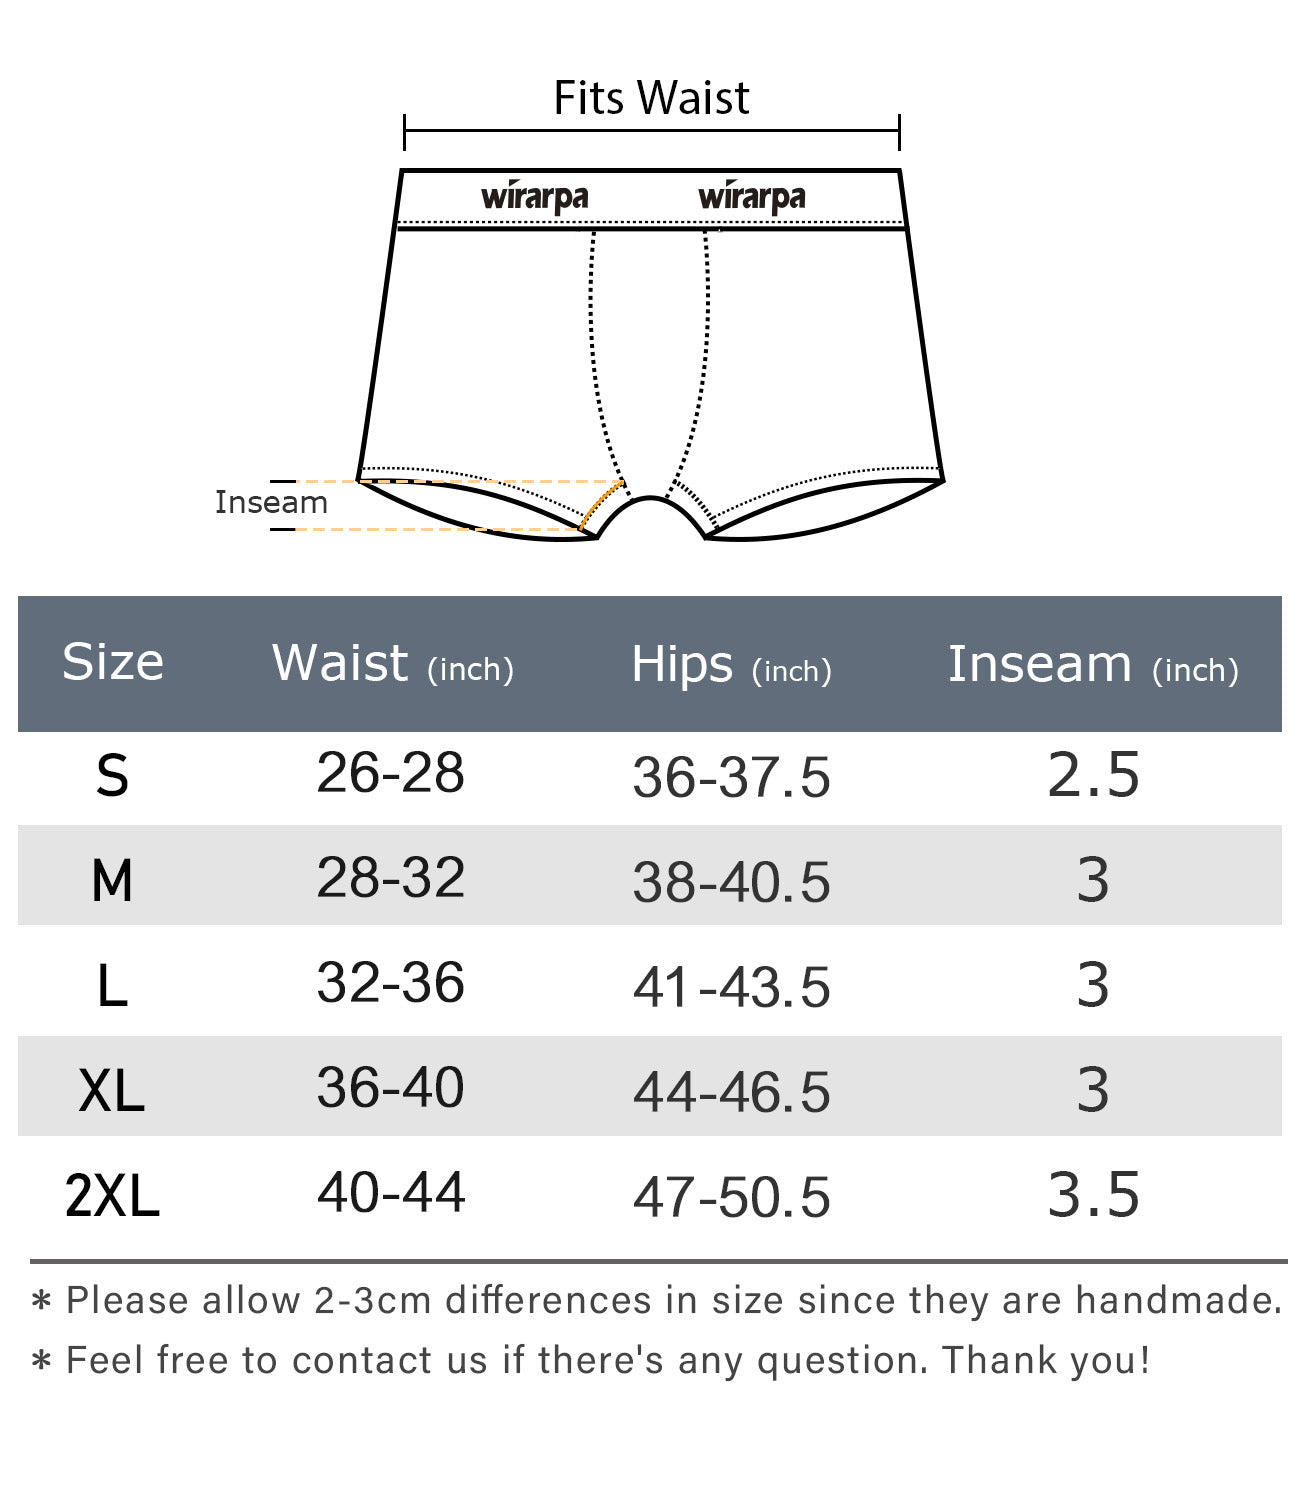 Wirarpa Women's Cotton Boxer Briefs Underwear Anti Chafe Boy Shorts 3" Inseam 4 Pack - Wirarpa Apparel, Inc.